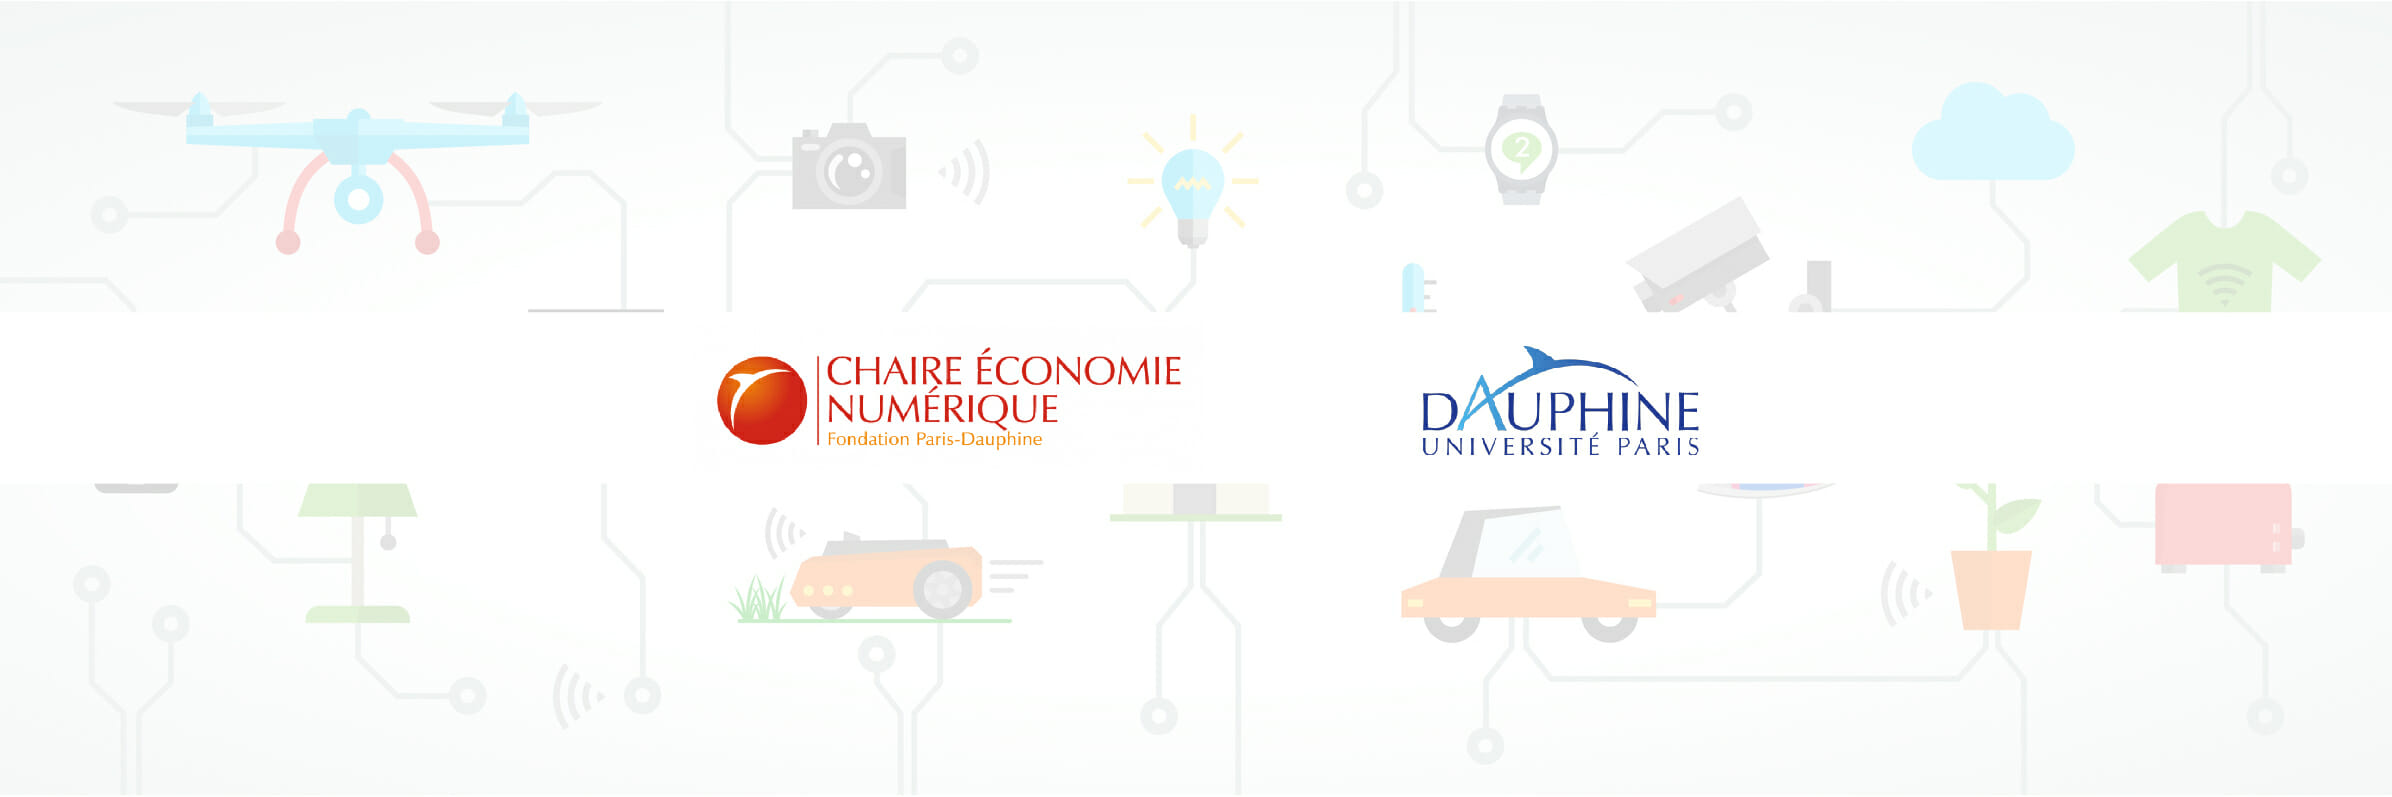 Conférence Objet connectés - Chaire économie numérique Dauphine